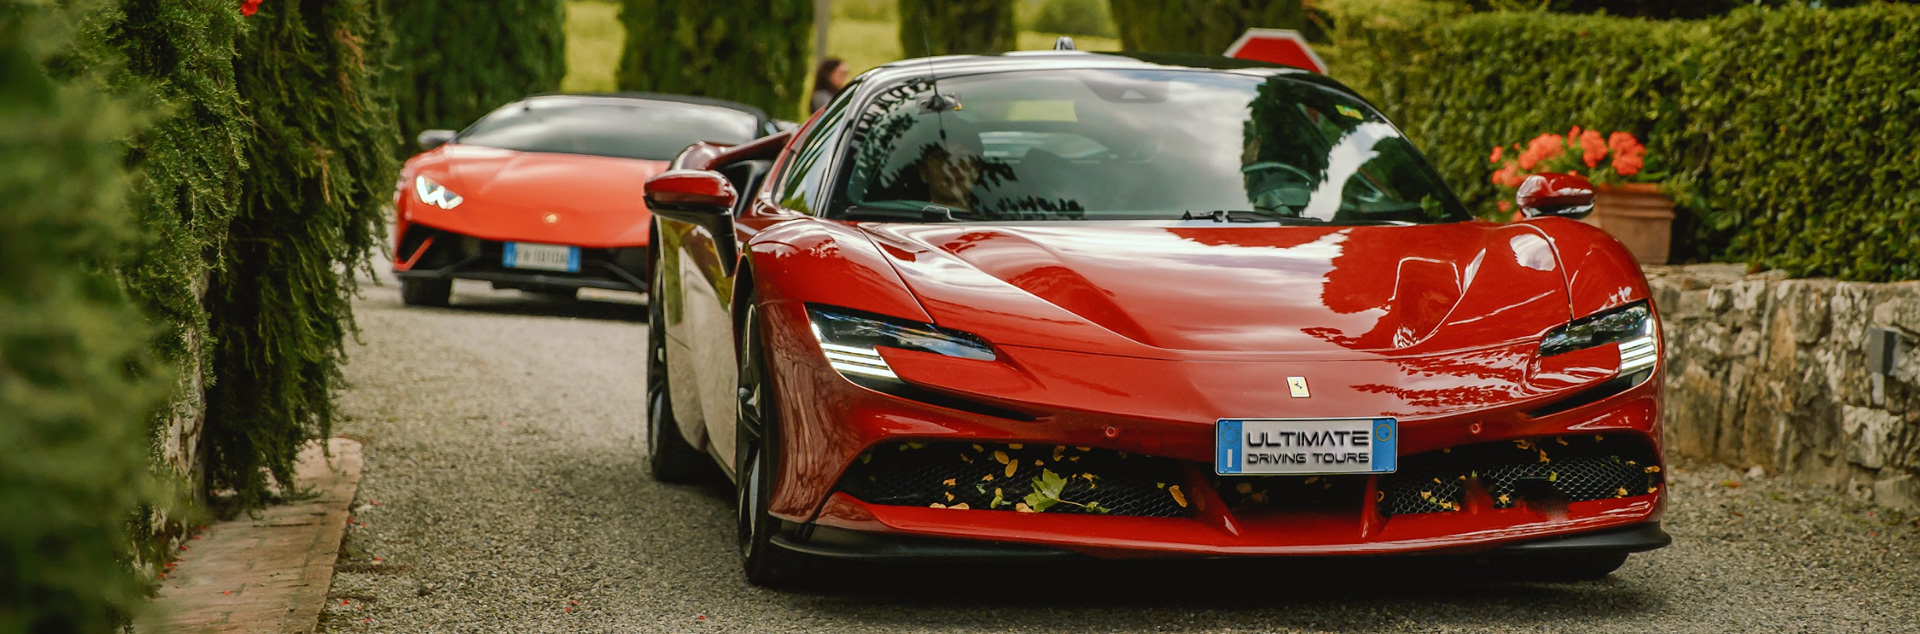 Ferrari vs Lamborghini: Discovering Italy's Greatest Rivalry